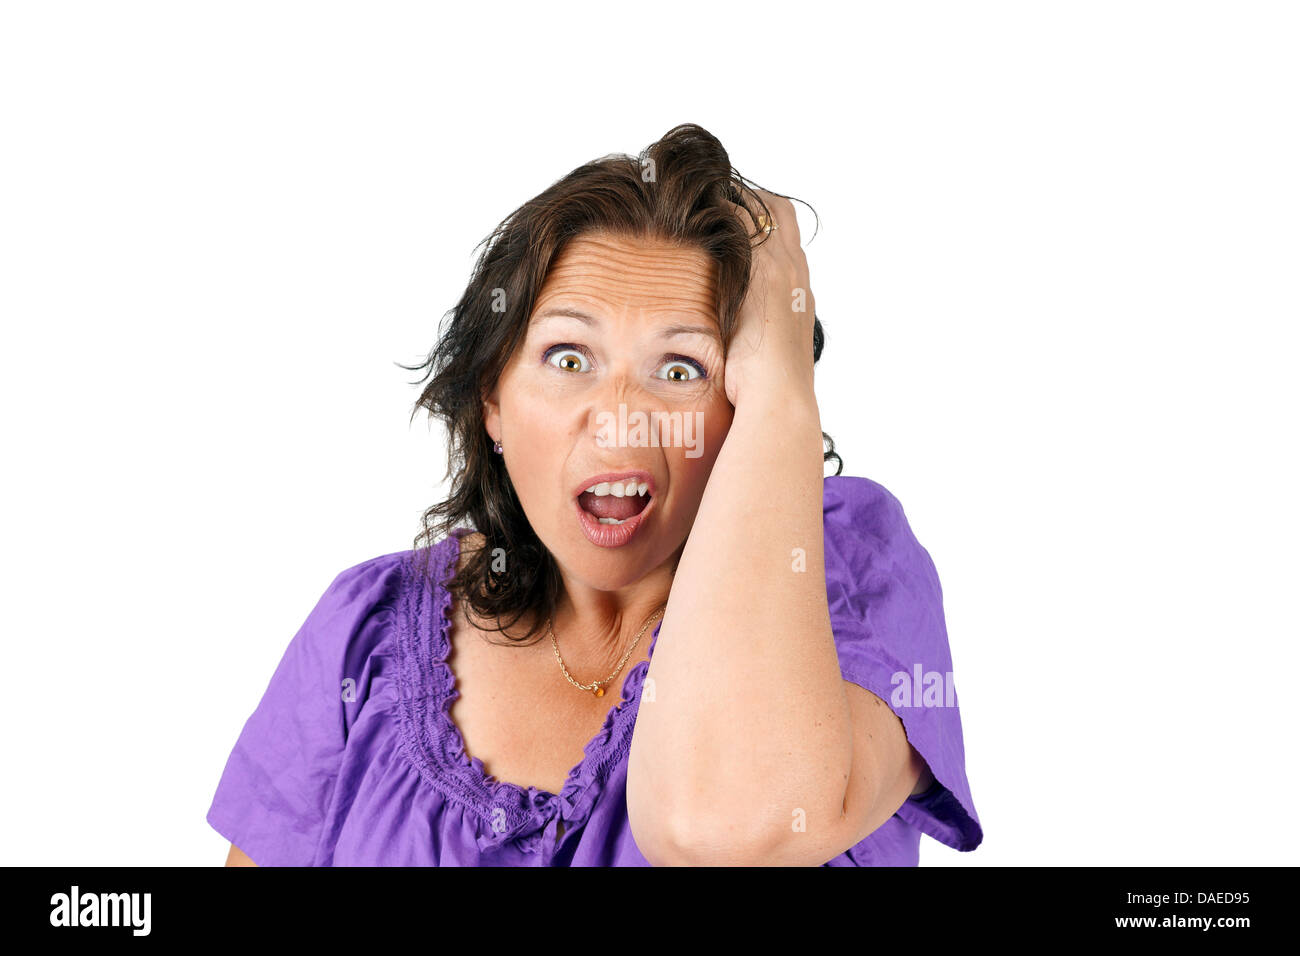 Mittelalter Frau lustiges Gesicht machen: Stress, Verzweiflung, Schock oder böse Überraschung. Stockfoto